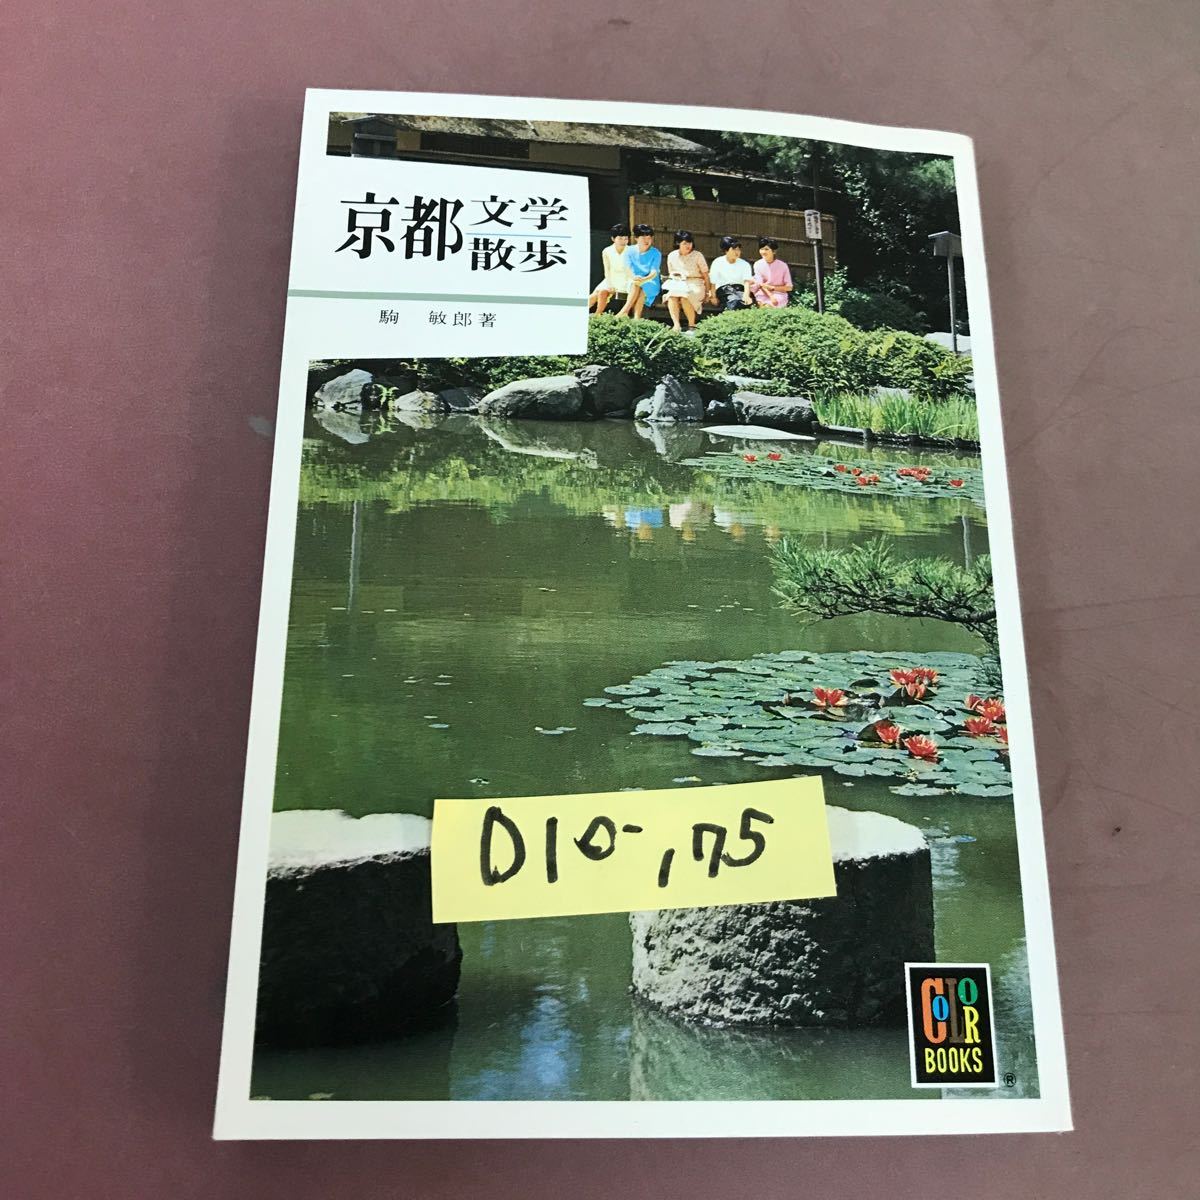 D10-175 京都-文学散歩- カラーブックス 水ヨレあり_画像1